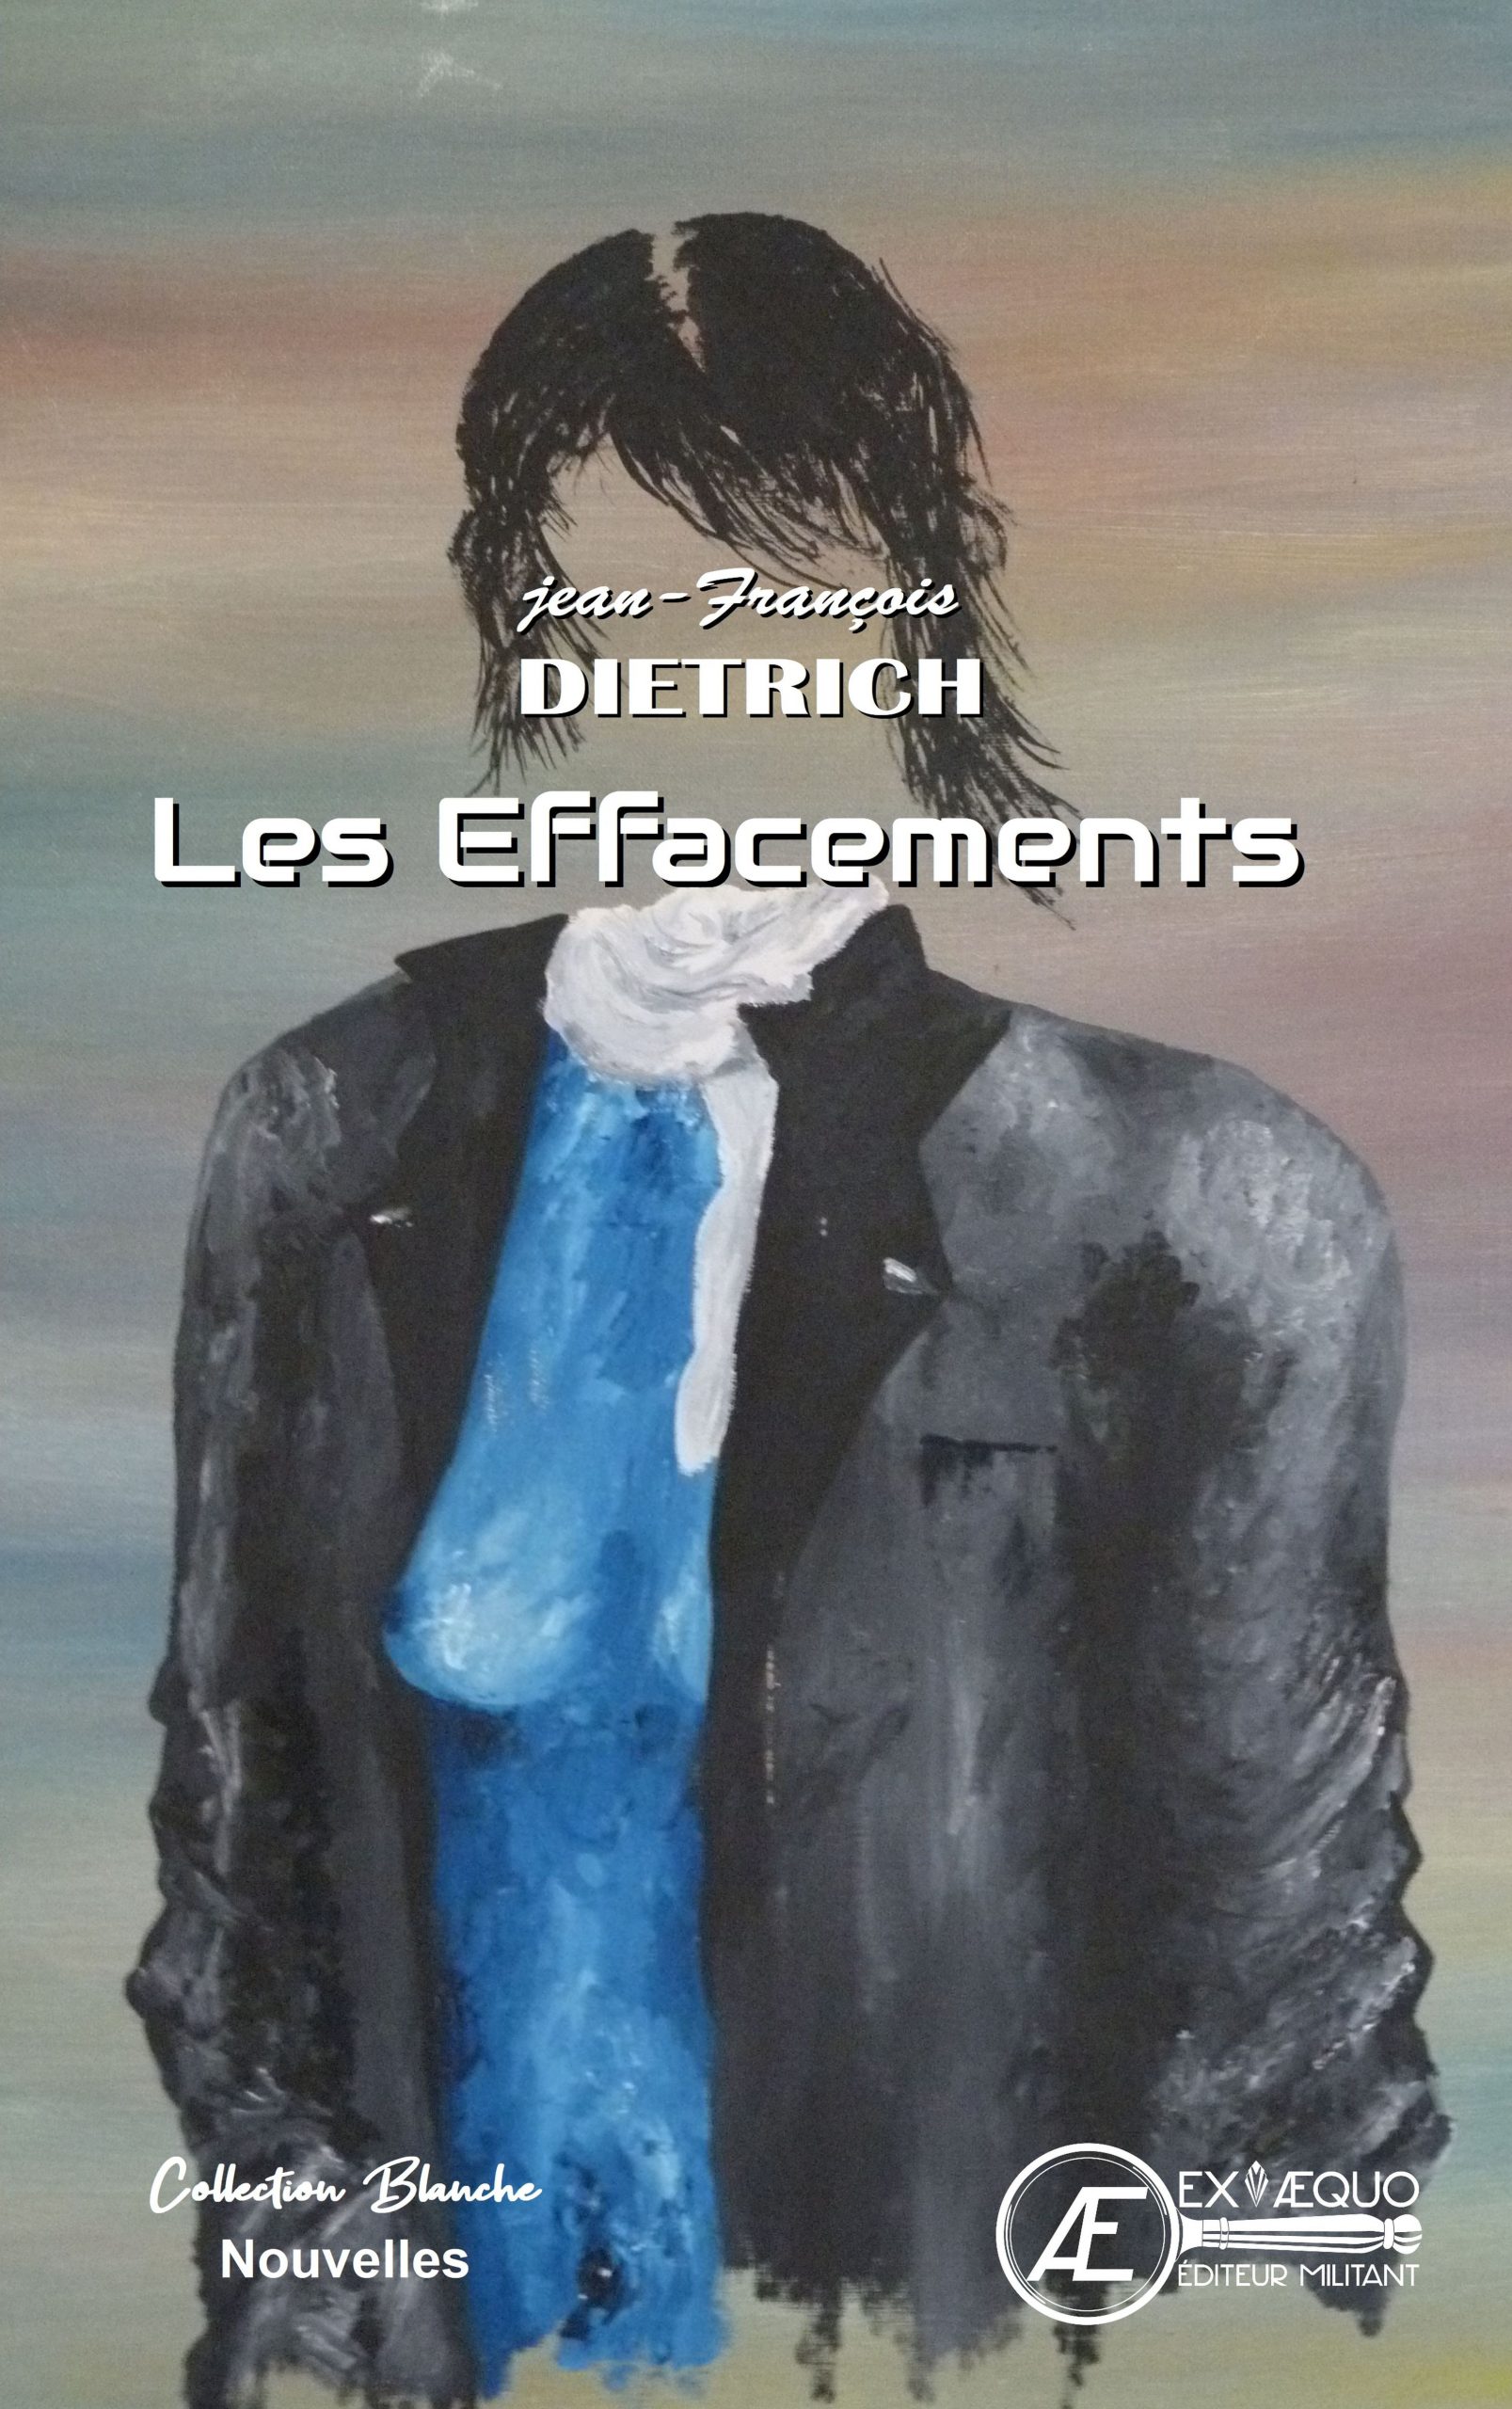 You are currently viewing Les effacements, de Jean-François Dietrich